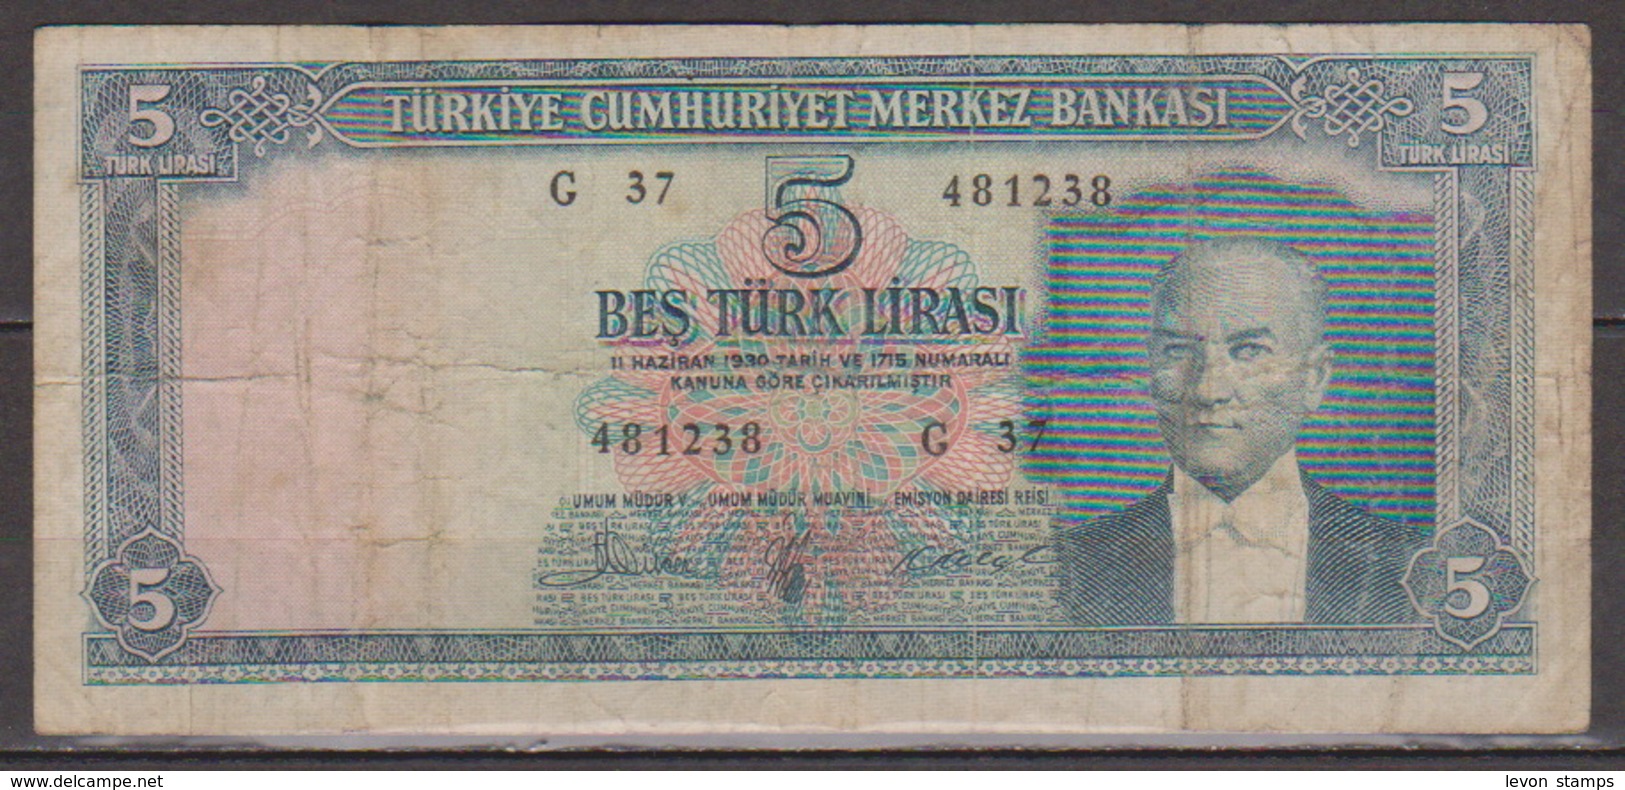 Turkey,Kemal Ataturk 1930(4-1-1965) Five Turk Lirasi,No´174,G. - Turchia